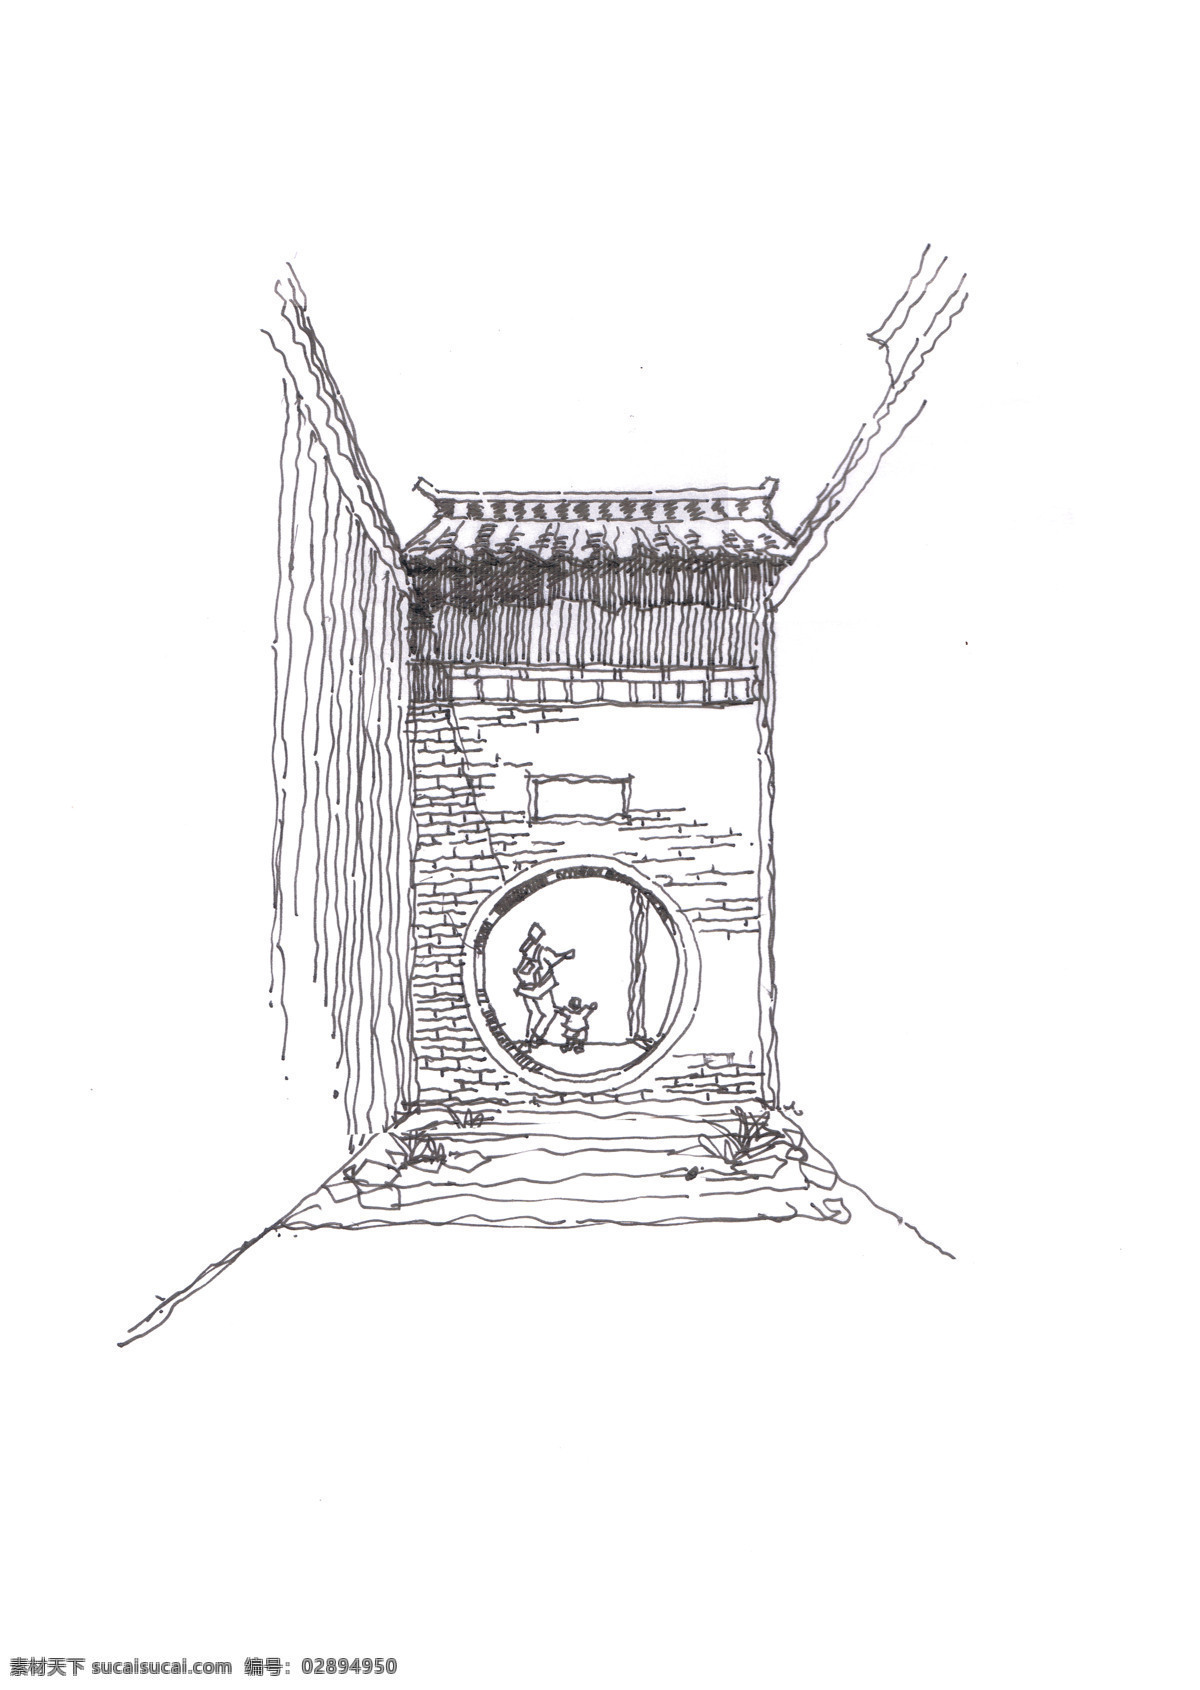 月洞门巷子 关中民居 建筑手绘 竹子 大门 院墙 民宿 民俗 手绘 环境设计 景观设计